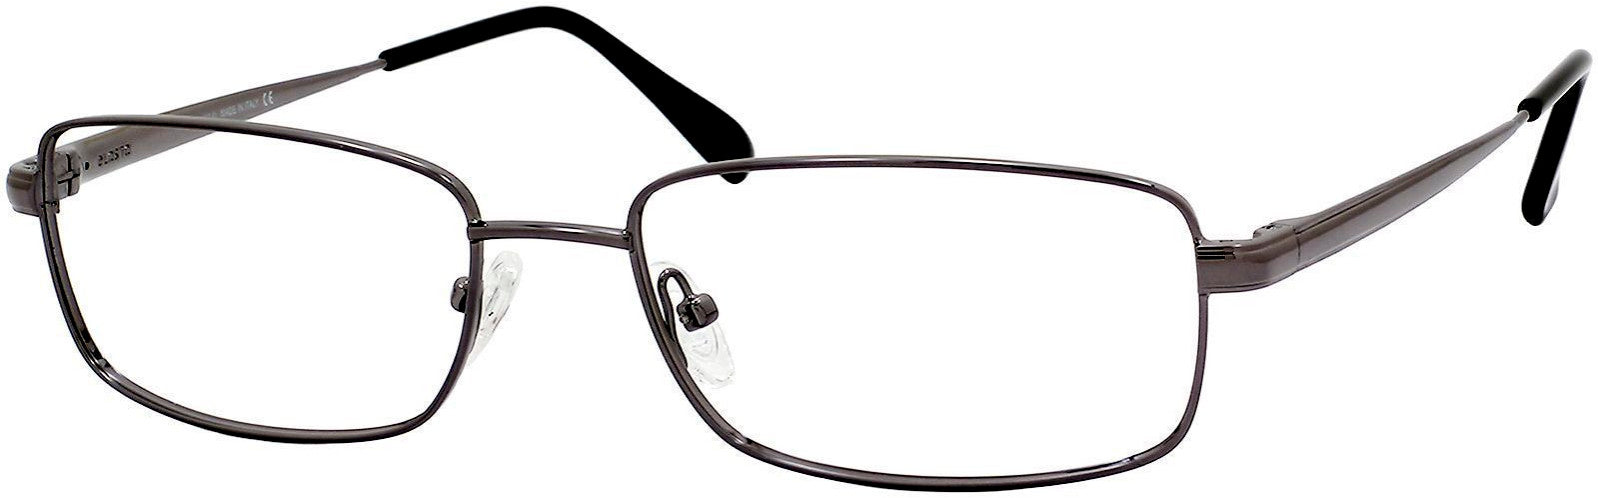  Elasta 7163 Rectangular Eyeglasses 0DF8-0DF8  Ruthenium (00 Demo Lens)